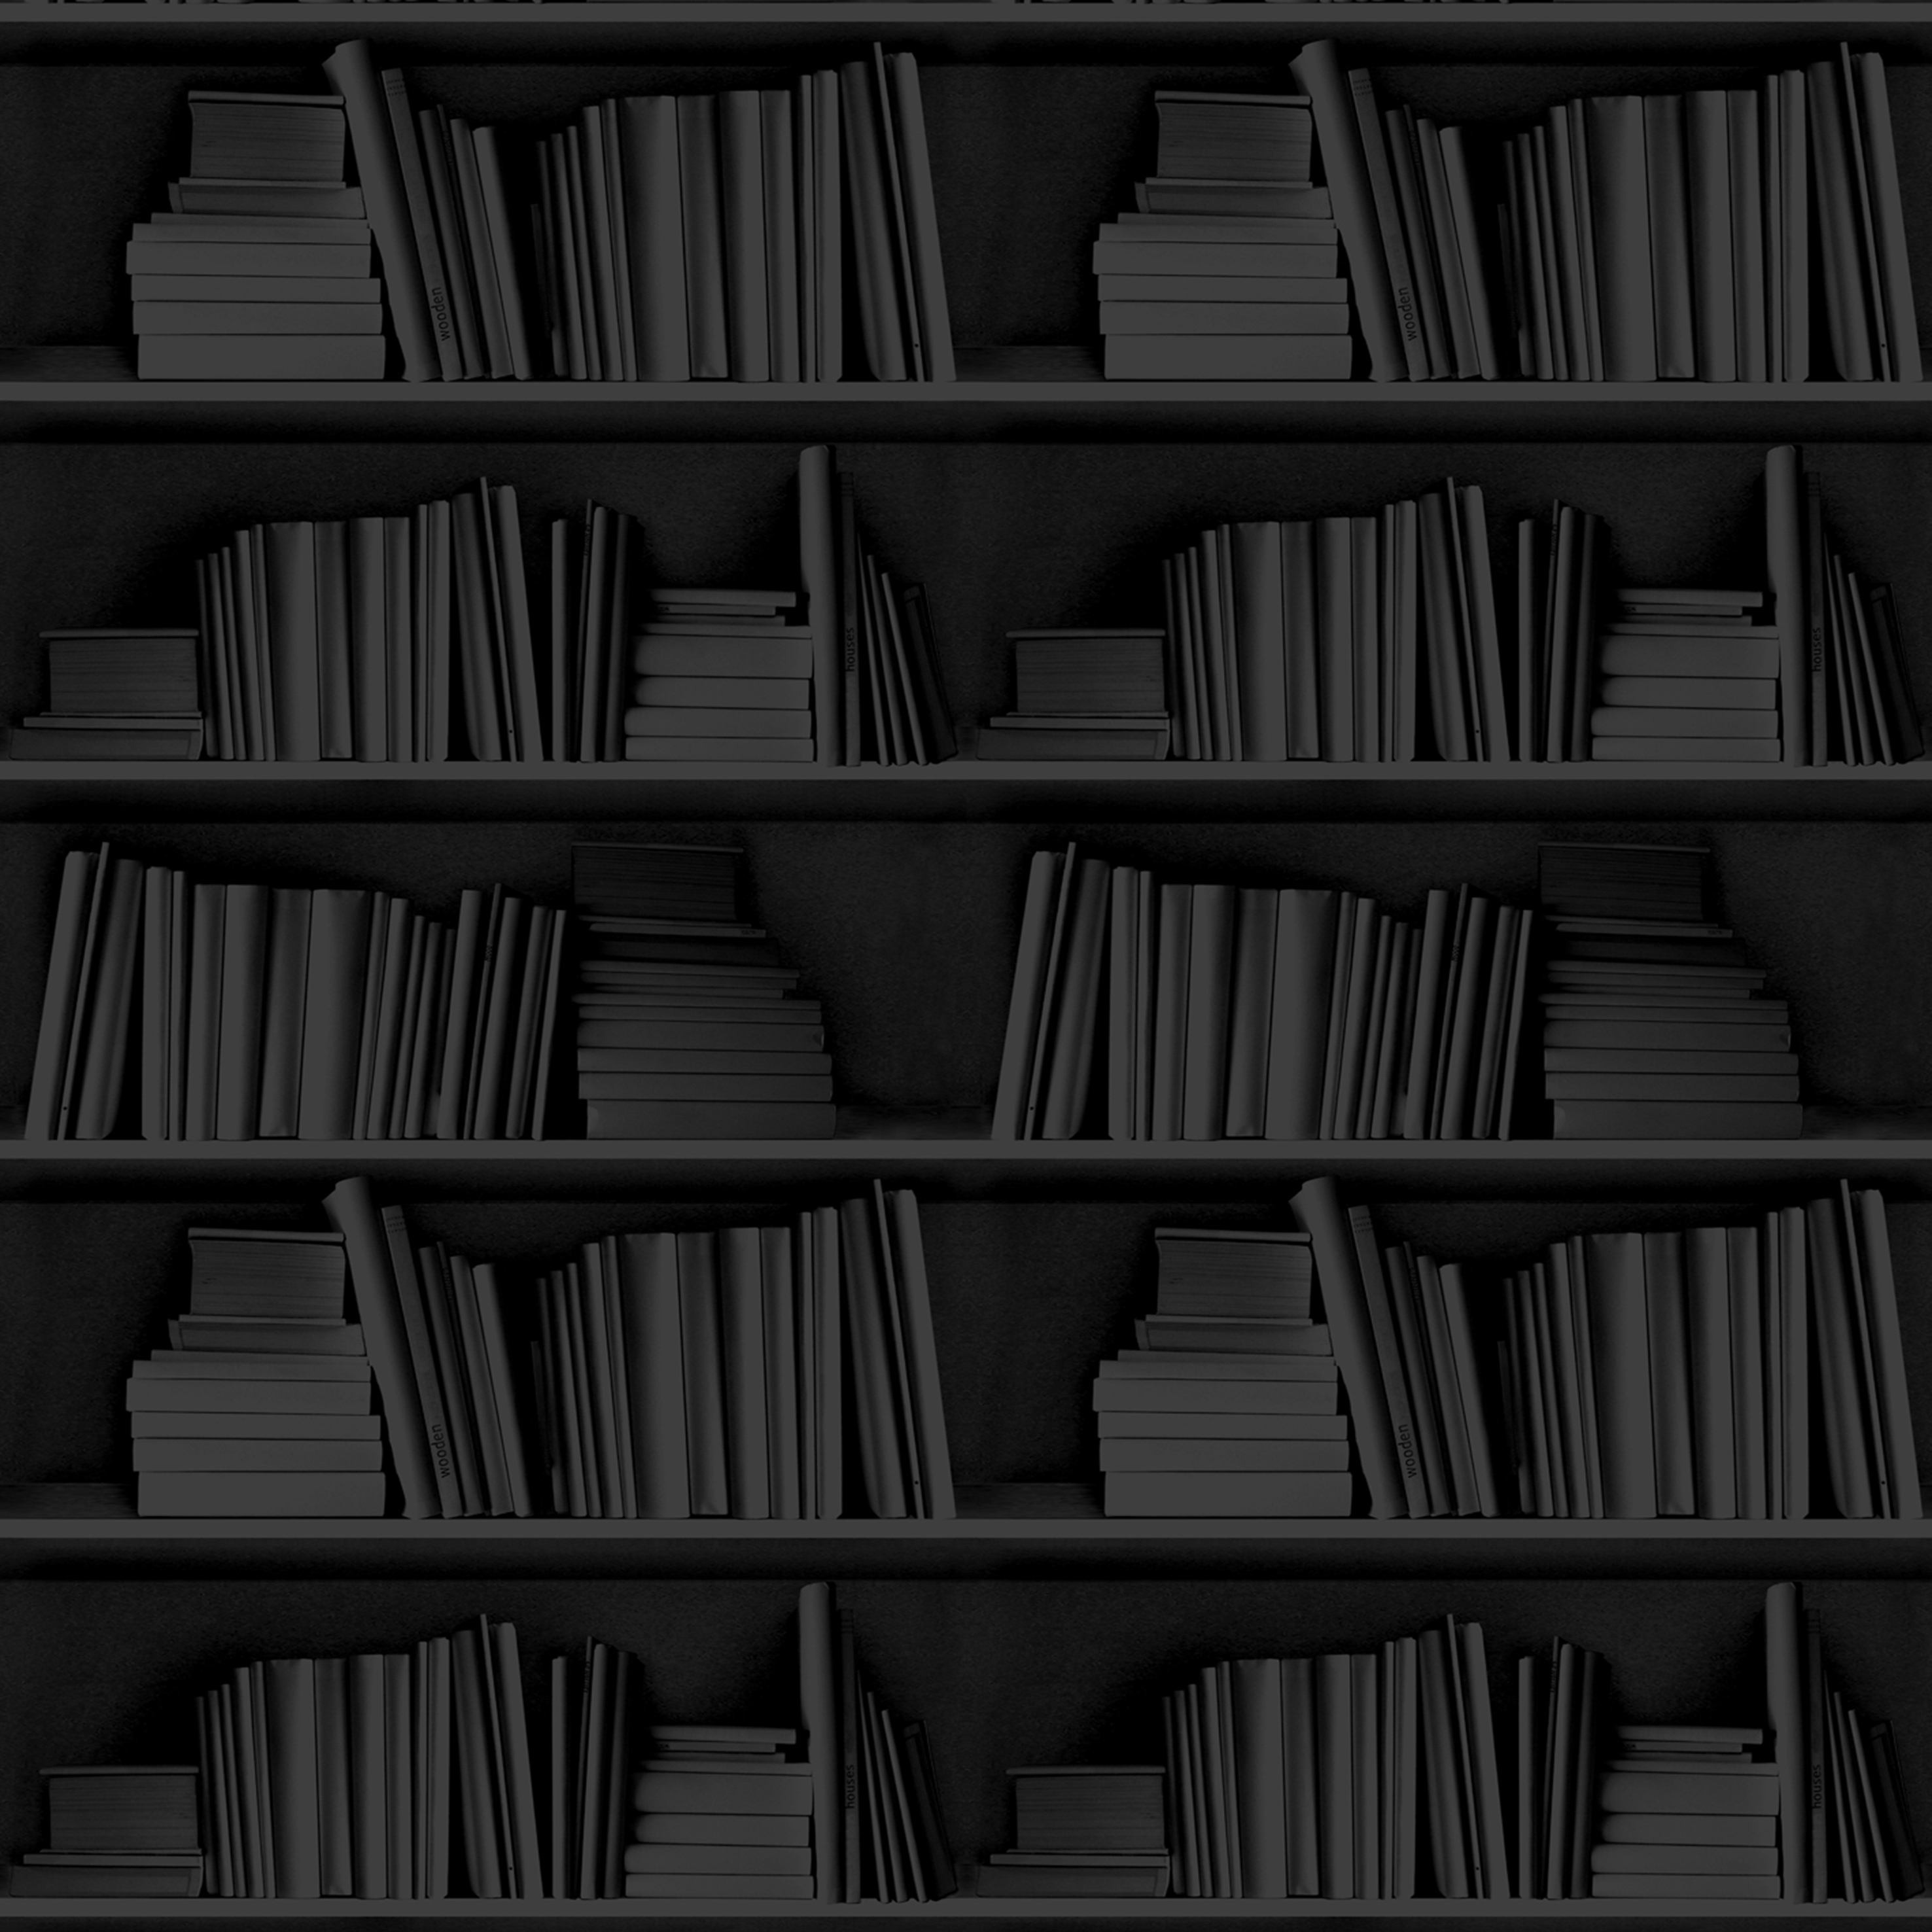 Black Bookshelf Wallpaper from Studiomold Made By Mineheart